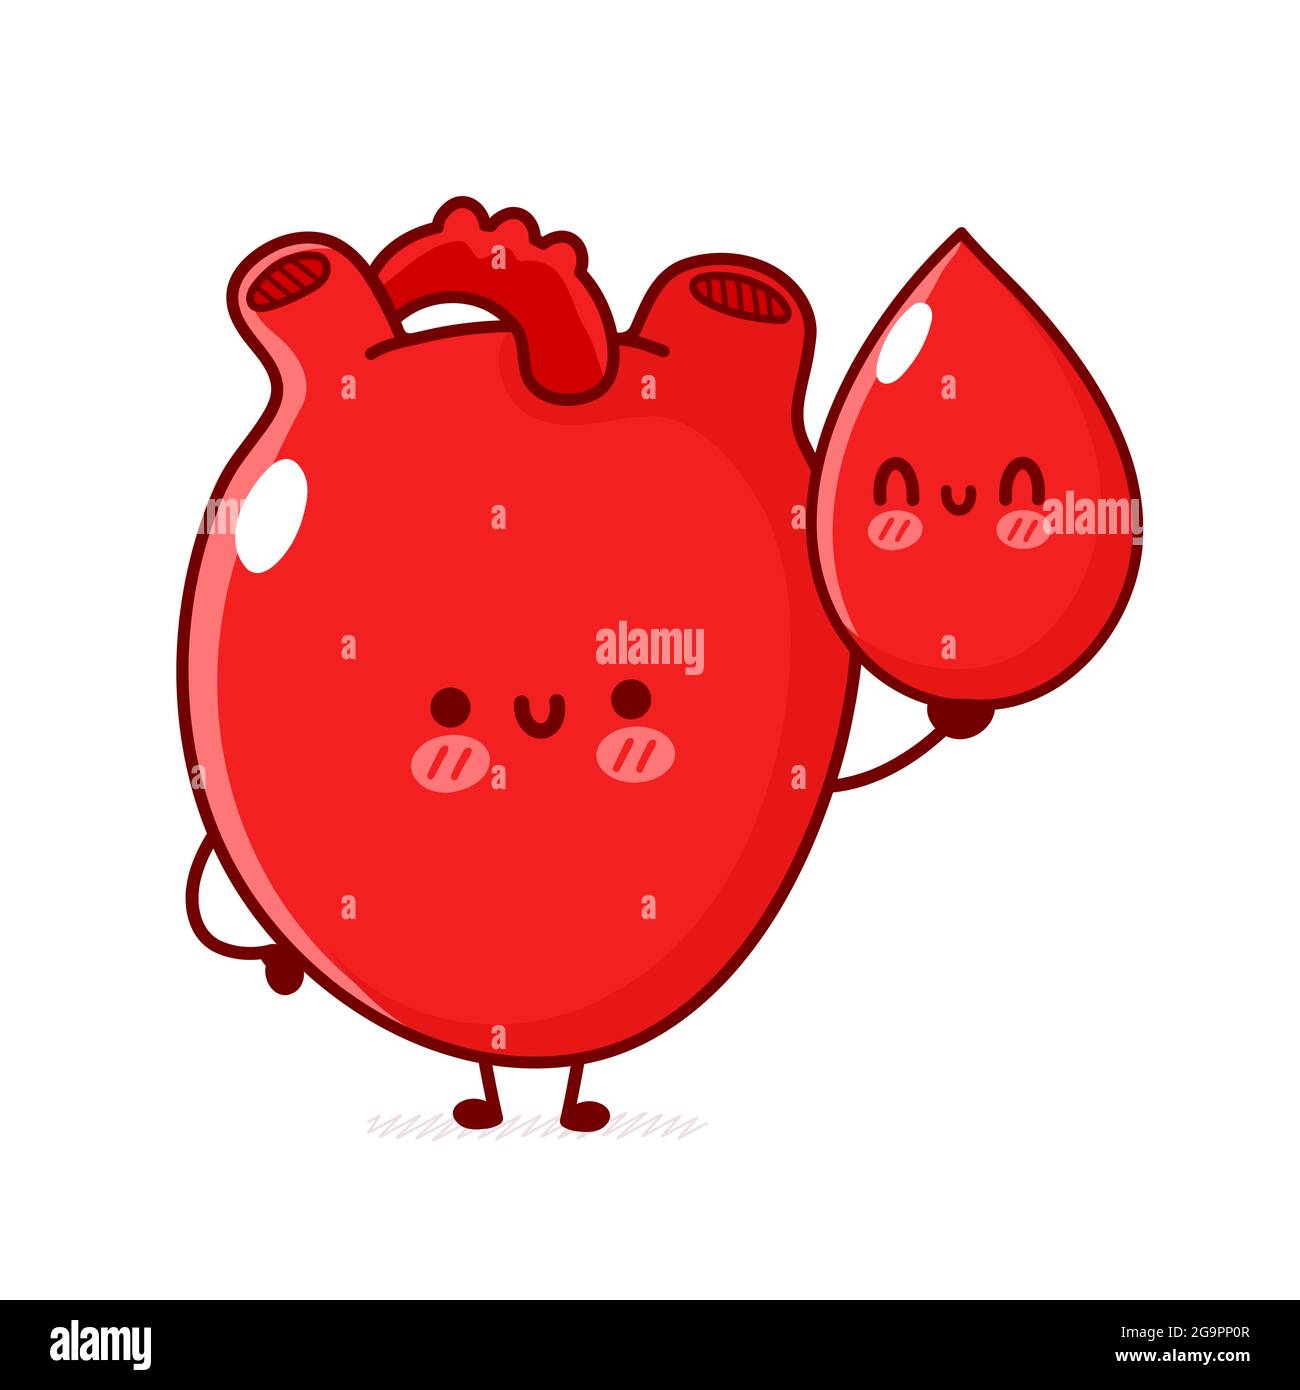 Carino divertente organo cuore umano tenere goccia di sangue. Vettoriale linea piatta doodle cartoon kawaii personaggio illustrazione. Isolato su sfondo bianco. Organo cuore umano, concetto di carattere mascotte cartoni animati. Illustrazione vettoriale Illustrazione Vettoriale